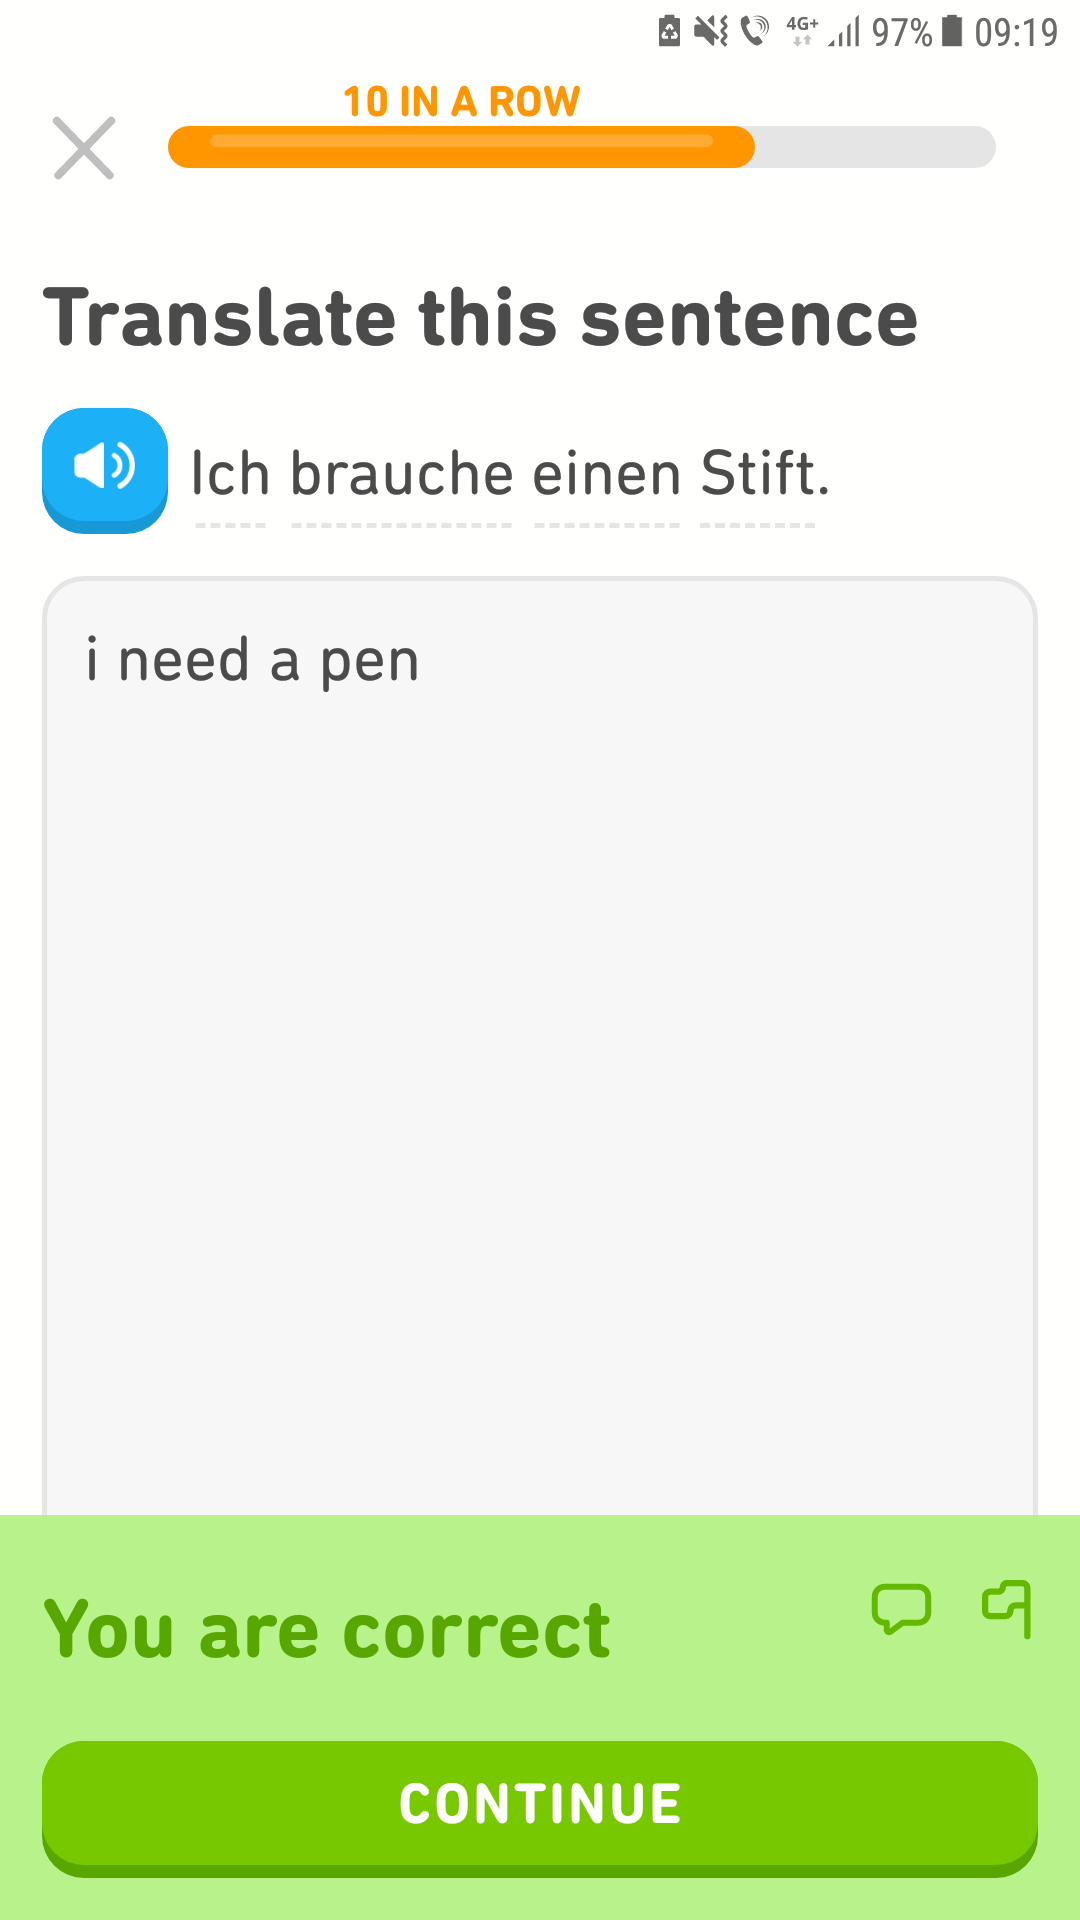 When you need a pen